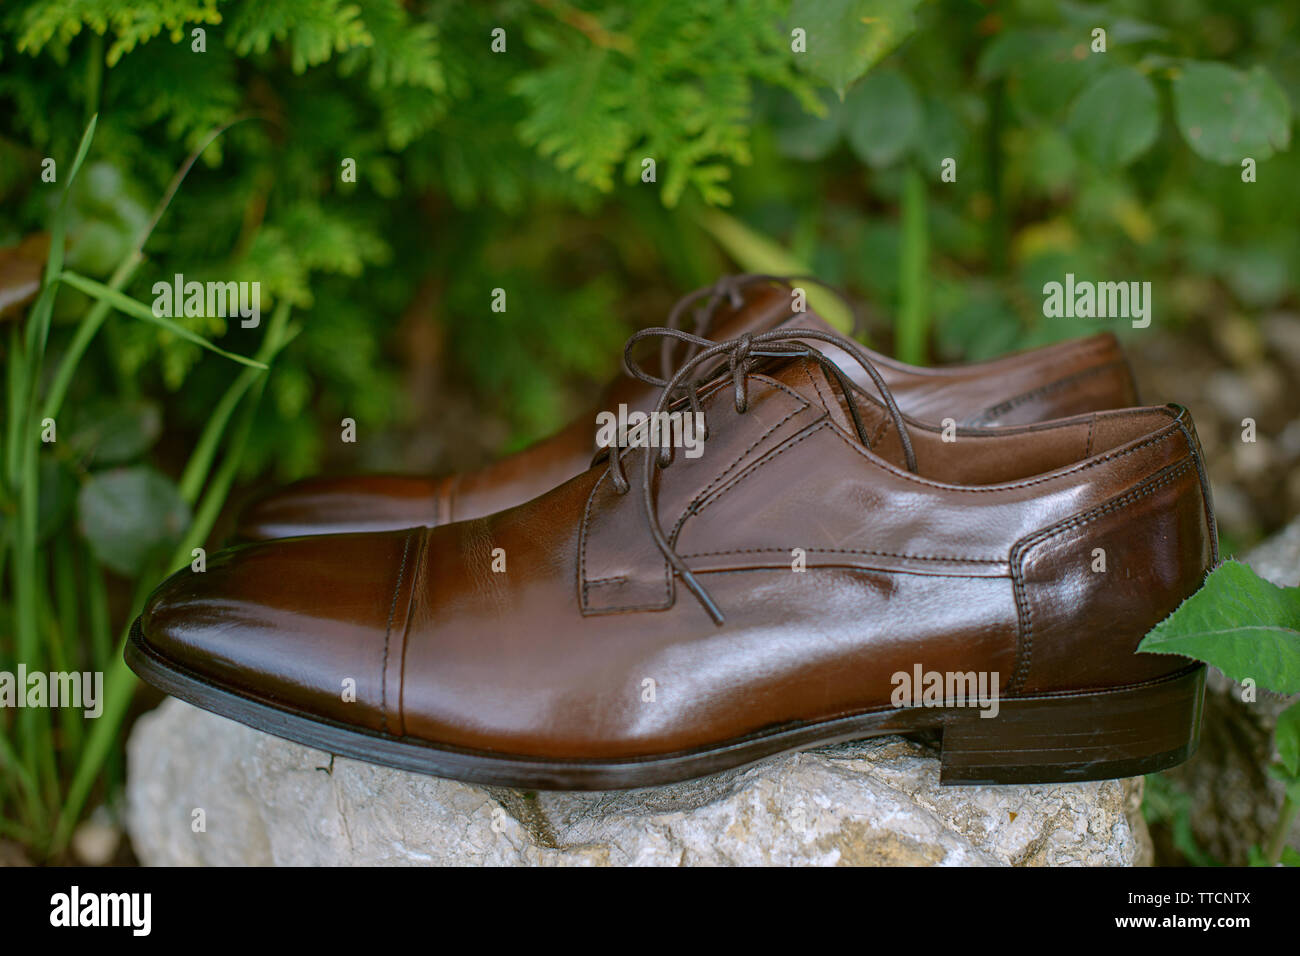 Zapatos de punta redonda e de alta resolución - Alamy